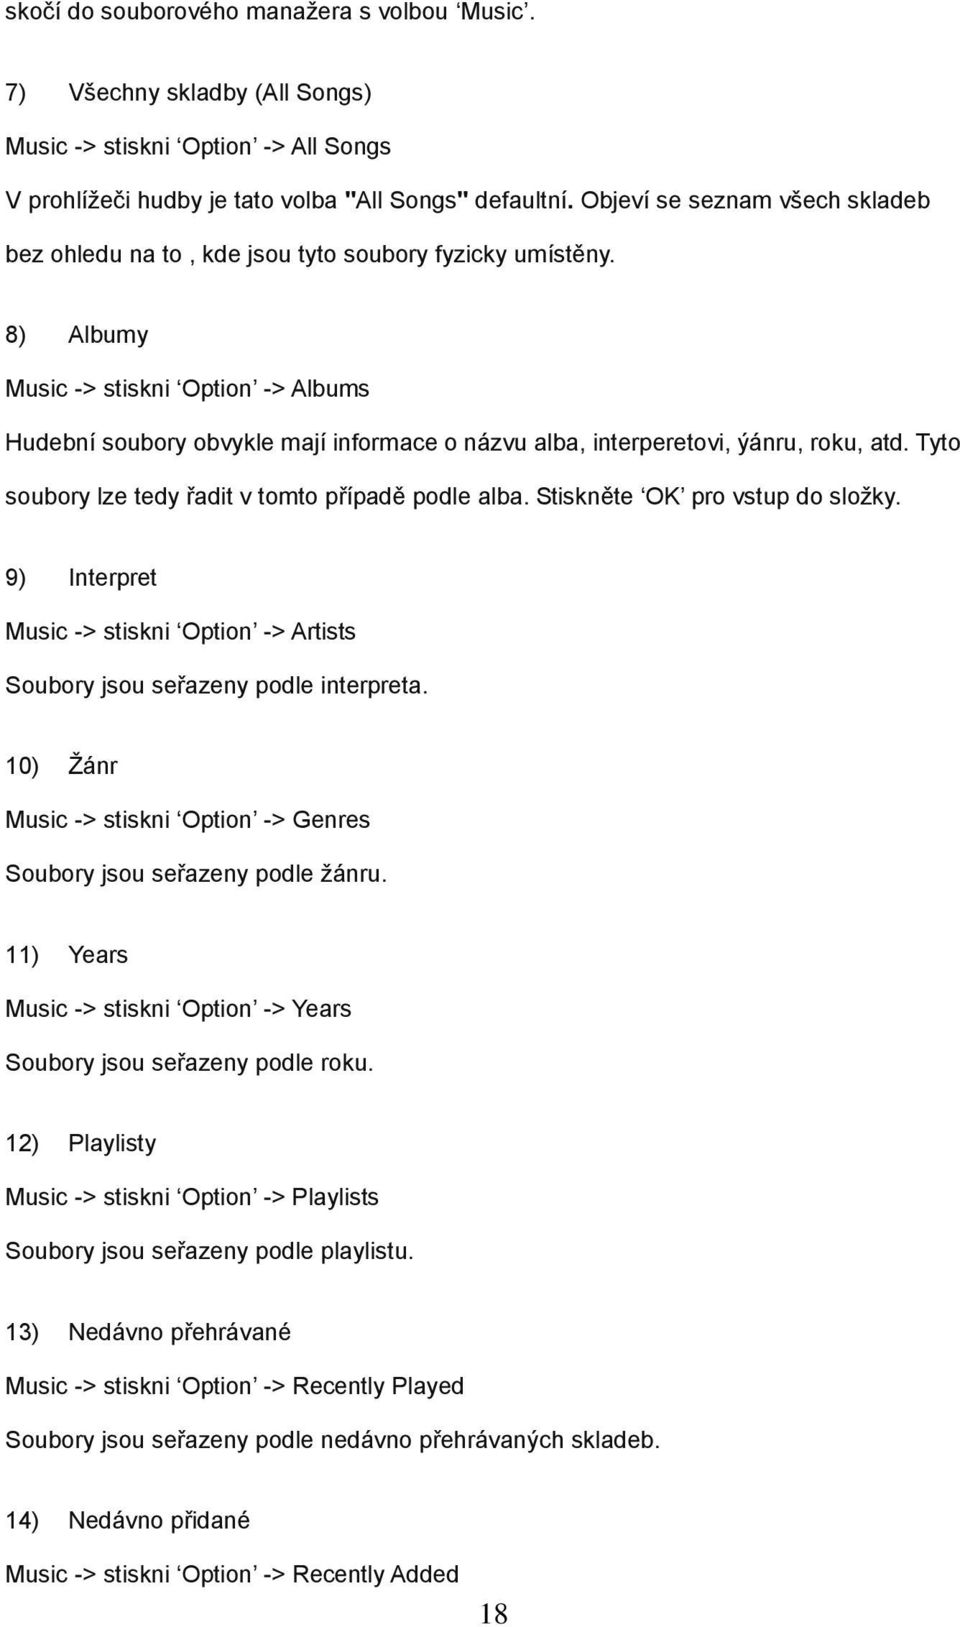 8) Albumy Music -> stiskni Option -> Albums Hudební soubory obvykle mají informace o názvu alba, interperetovi, ýánru, roku, atd. Tyto soubory lze tedy řadit v tomto případě podle alba.